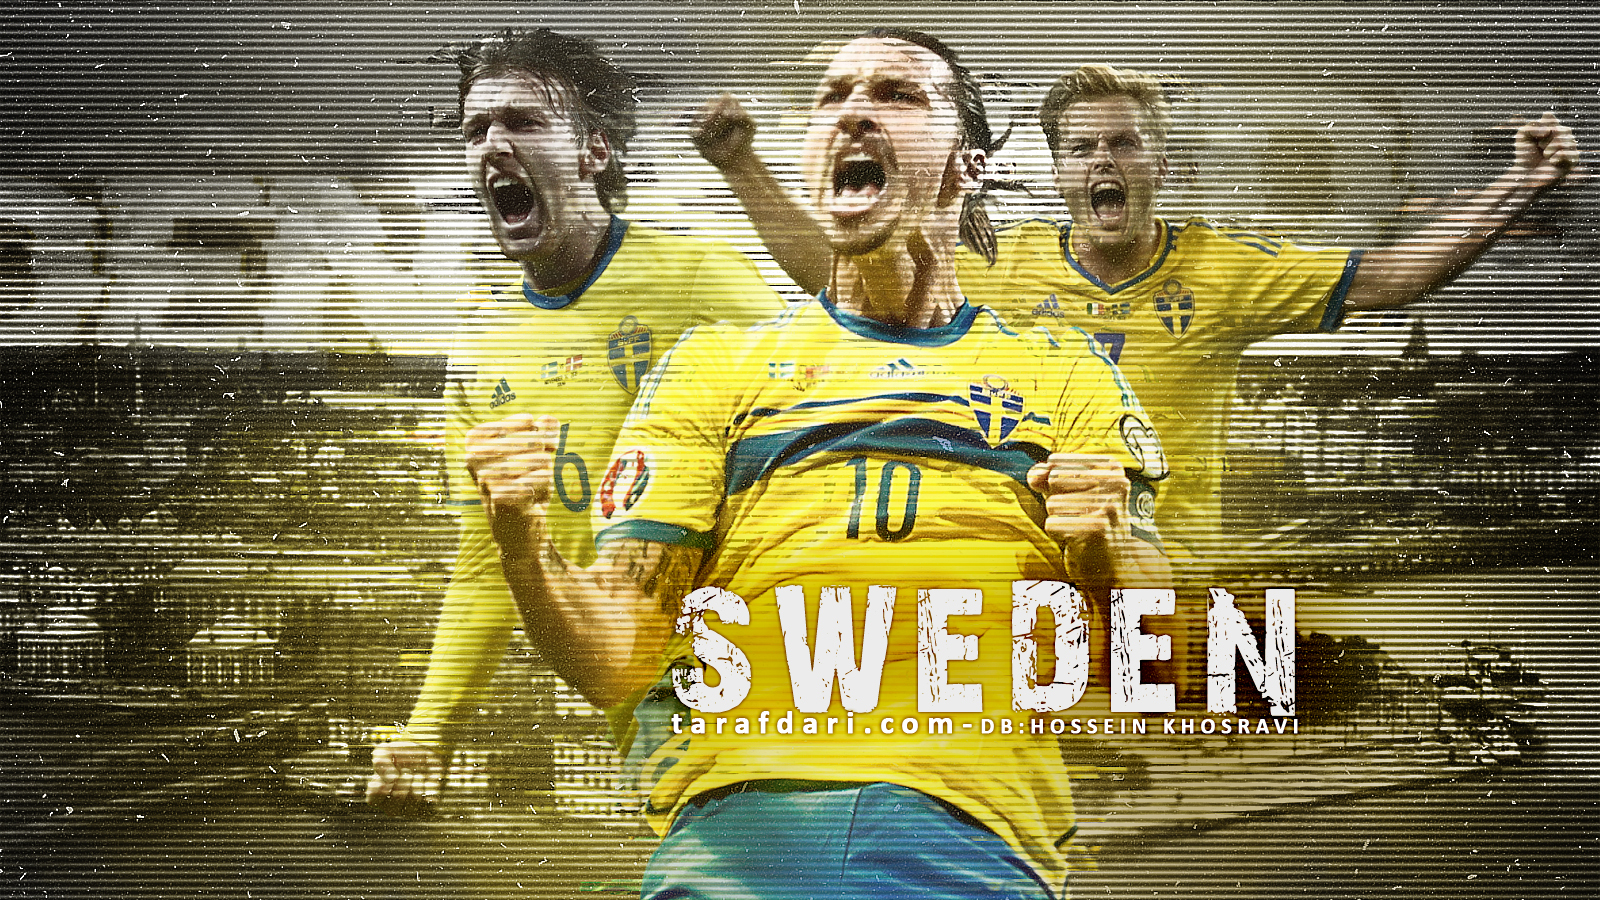 یورو 2016؛ پوستر اختصاصی طرفداری، سوئد و رهبری خاص به نام زلاتان